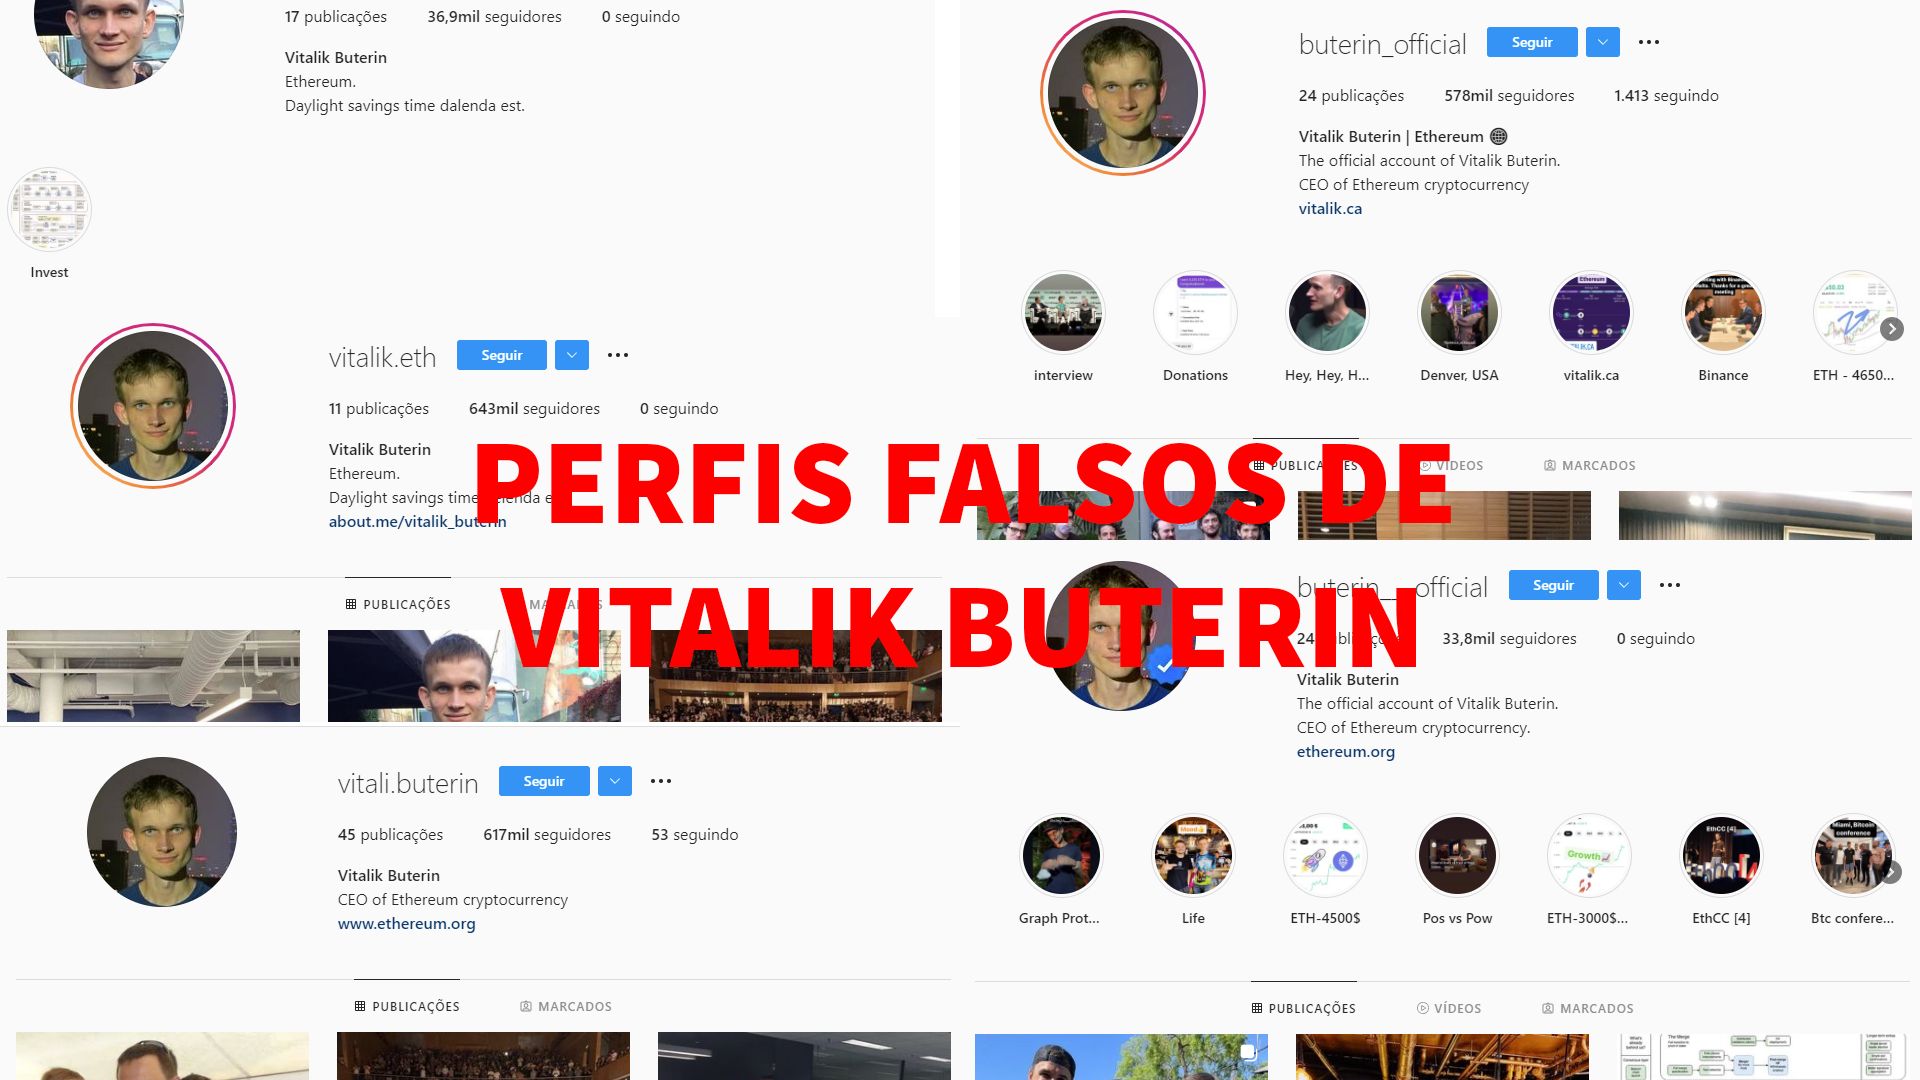 Perfis falsos de Vitalik Buterin no Instagram.